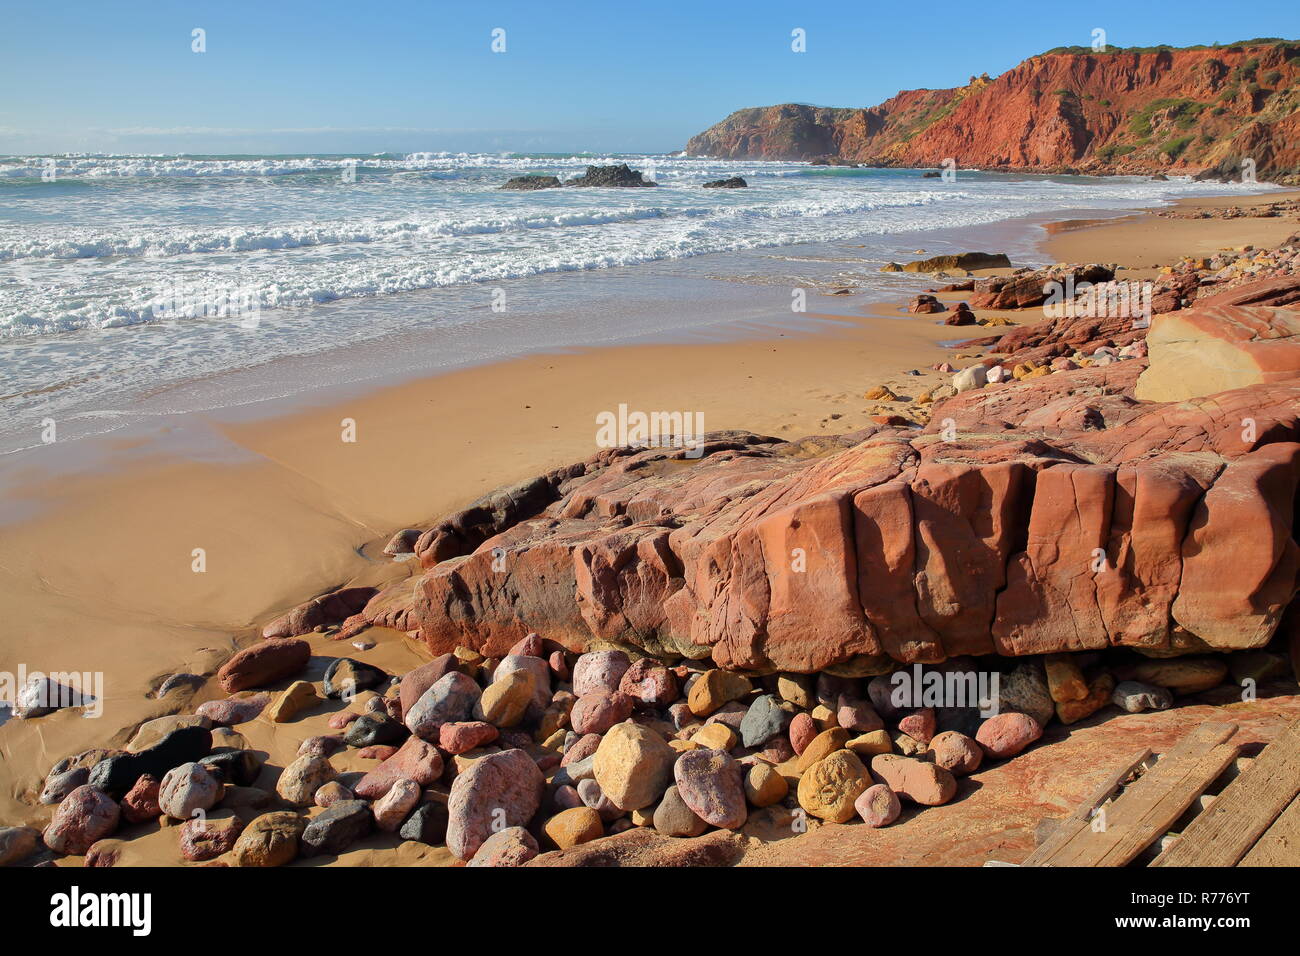 Amado spiaggia vicino Carrapateira, con paesaggio colorato e scogliere a picco sul mare, Costa Vicentina, Algarve, PORTOGALLO Foto Stock